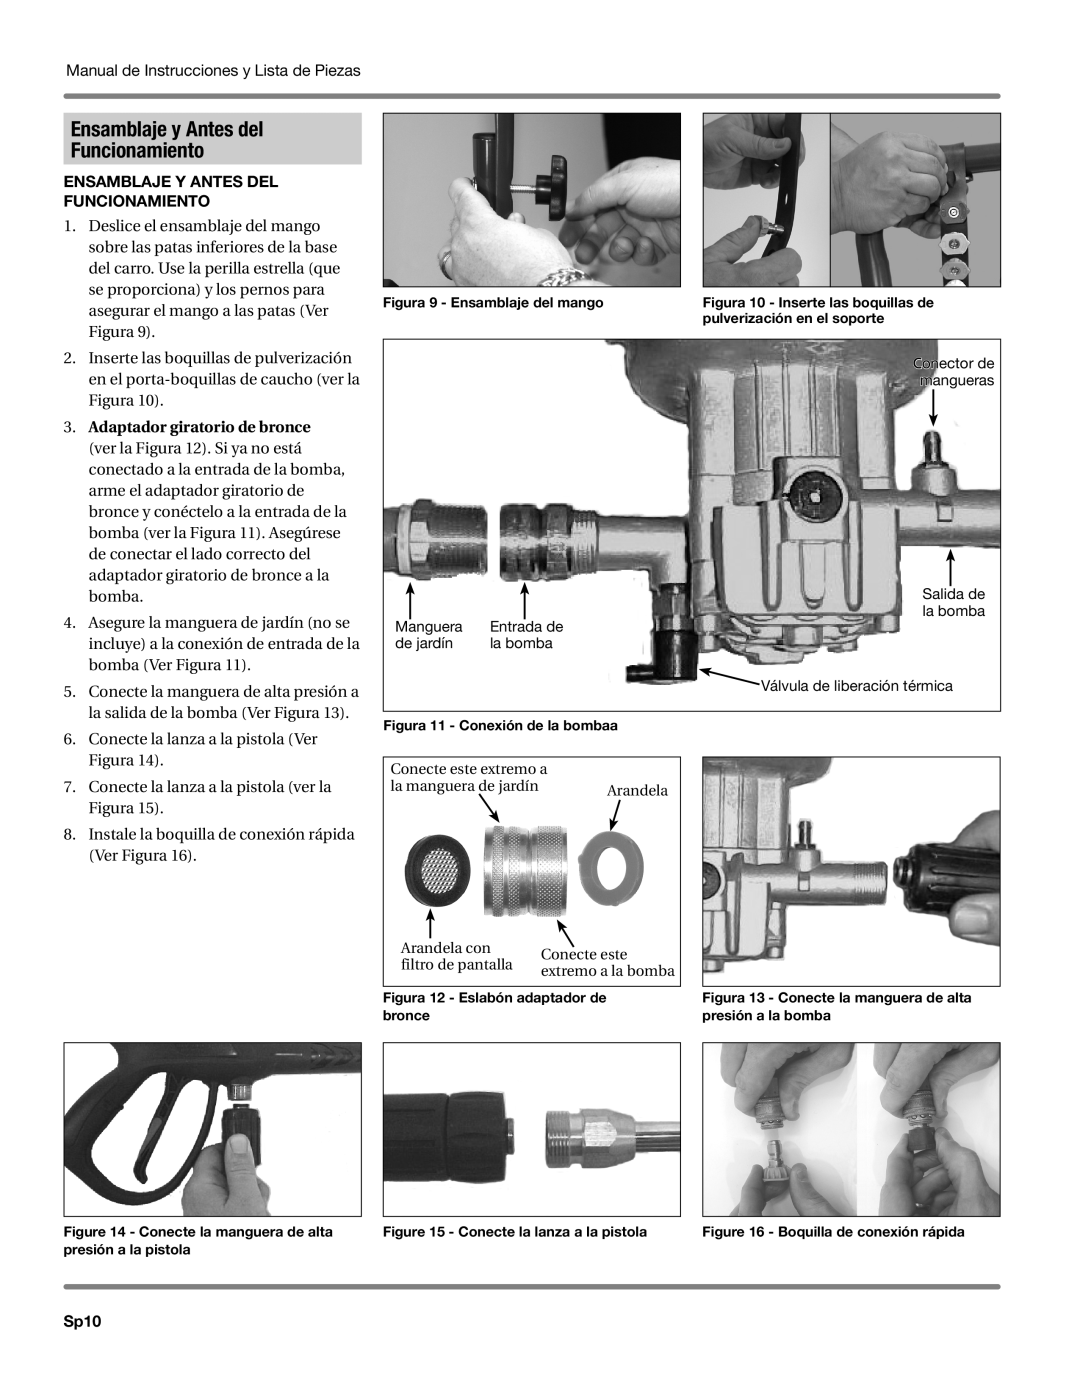 Campbell Hausfeld CP5101 manual Ensamblaje y Antes del Funcionamiento, Sp10 